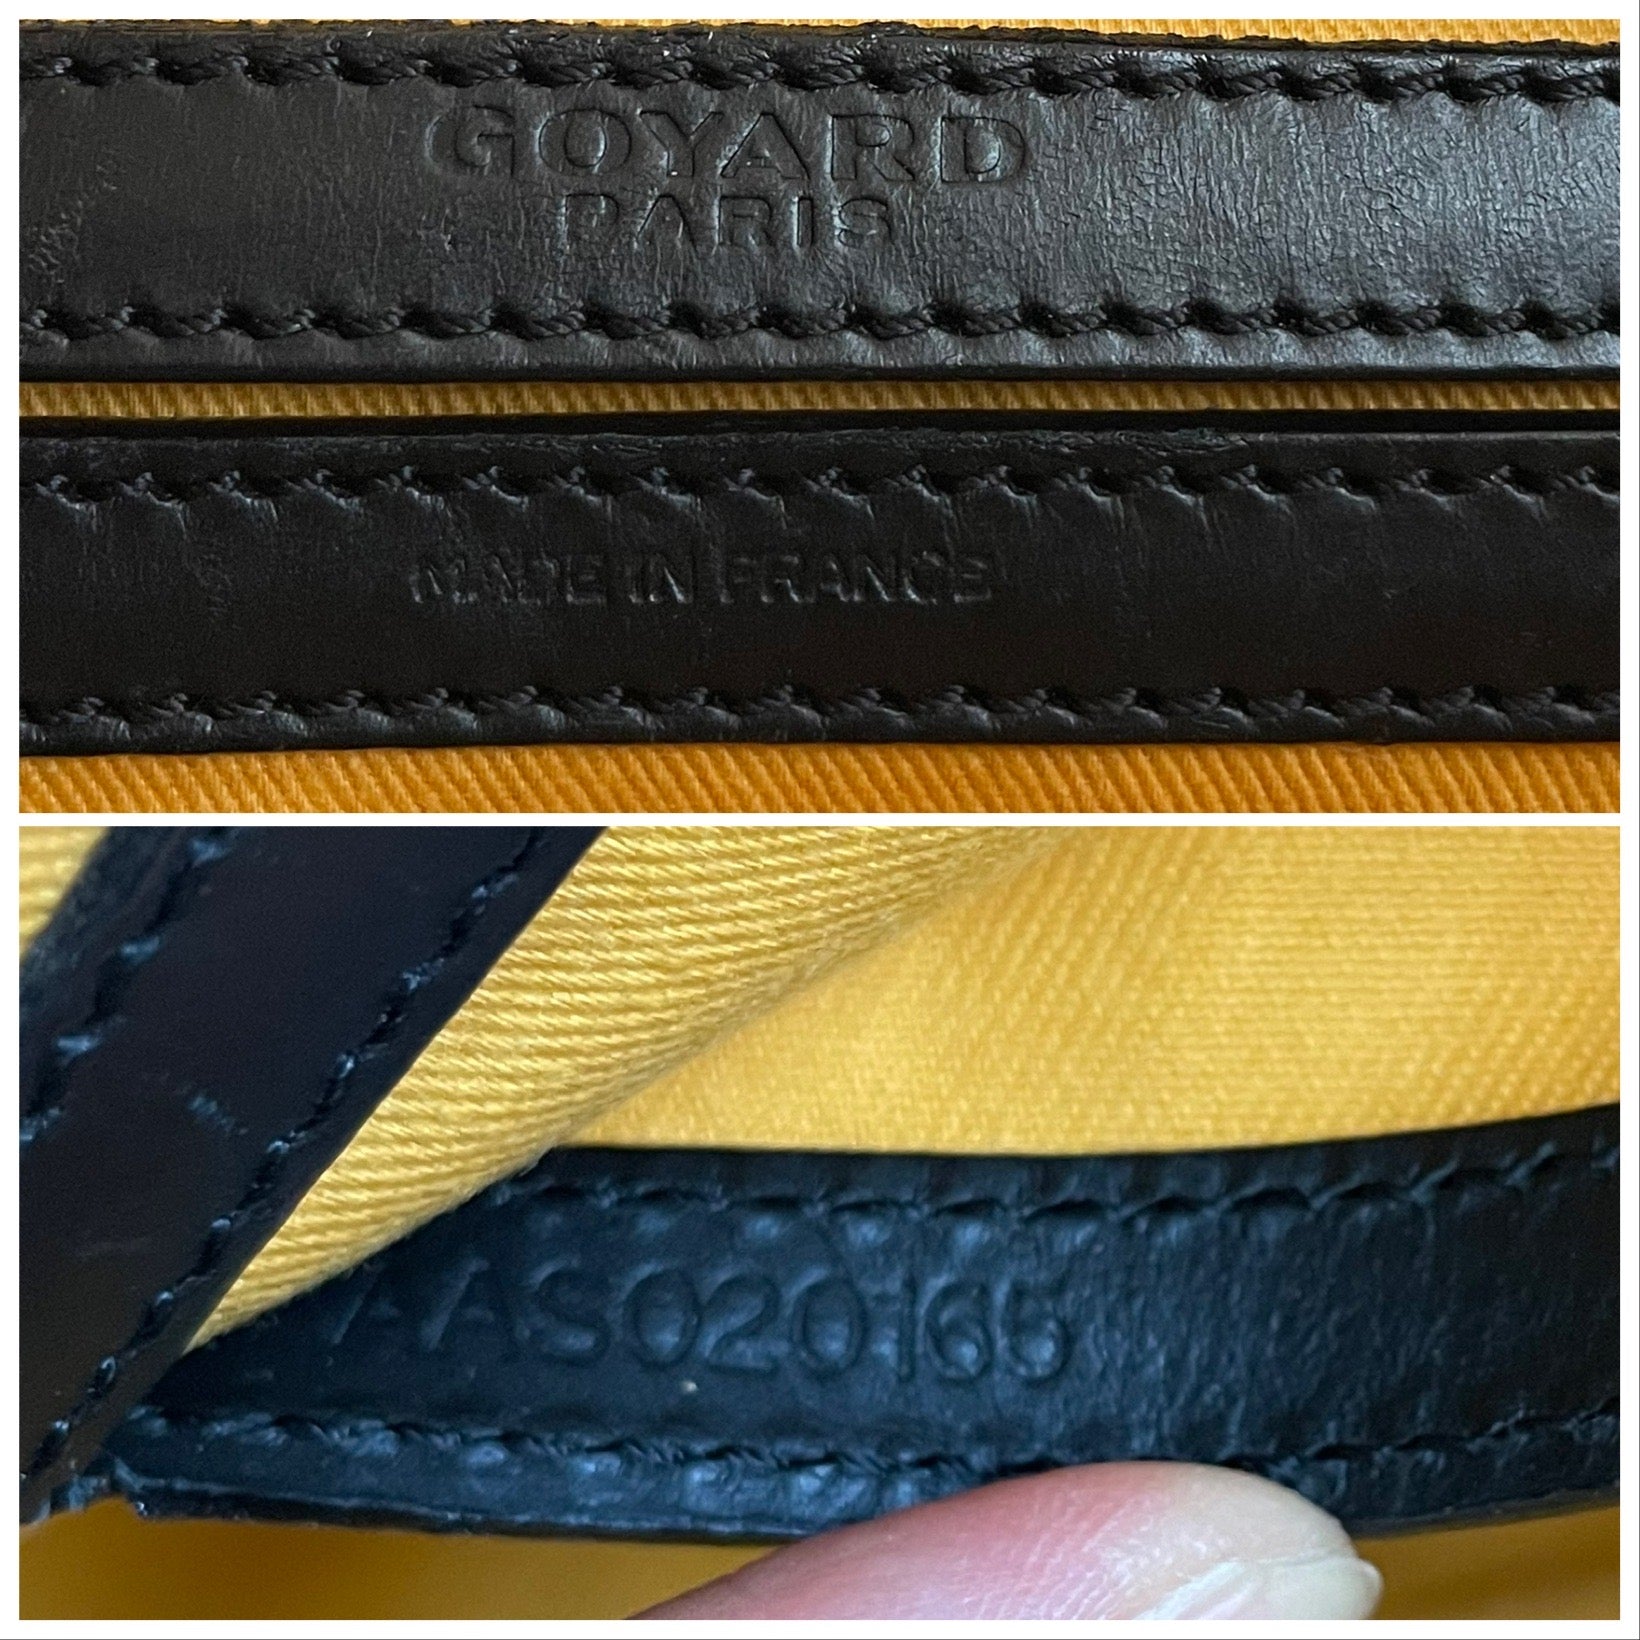 Cap vert leather crossbody bag Goyard Black in Leather - 35988551